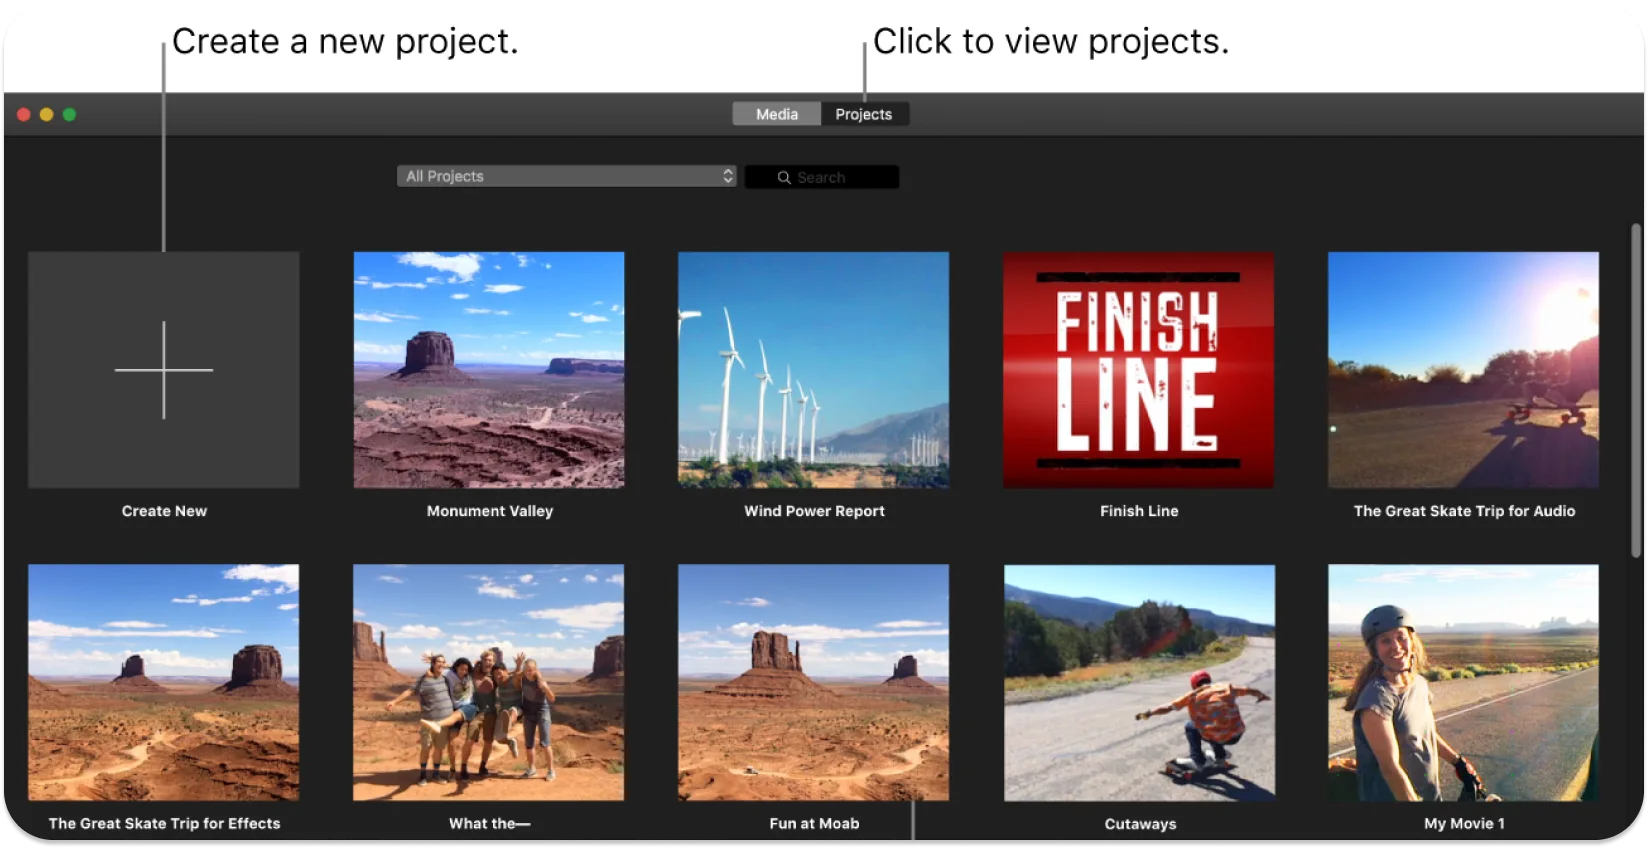 iMovie käyttöliittymä, joka näyttää joukon videoprojektien pikkukuvia ja kehottaa luomaan uuden projektin tai avaamaan olemassa olevan.
